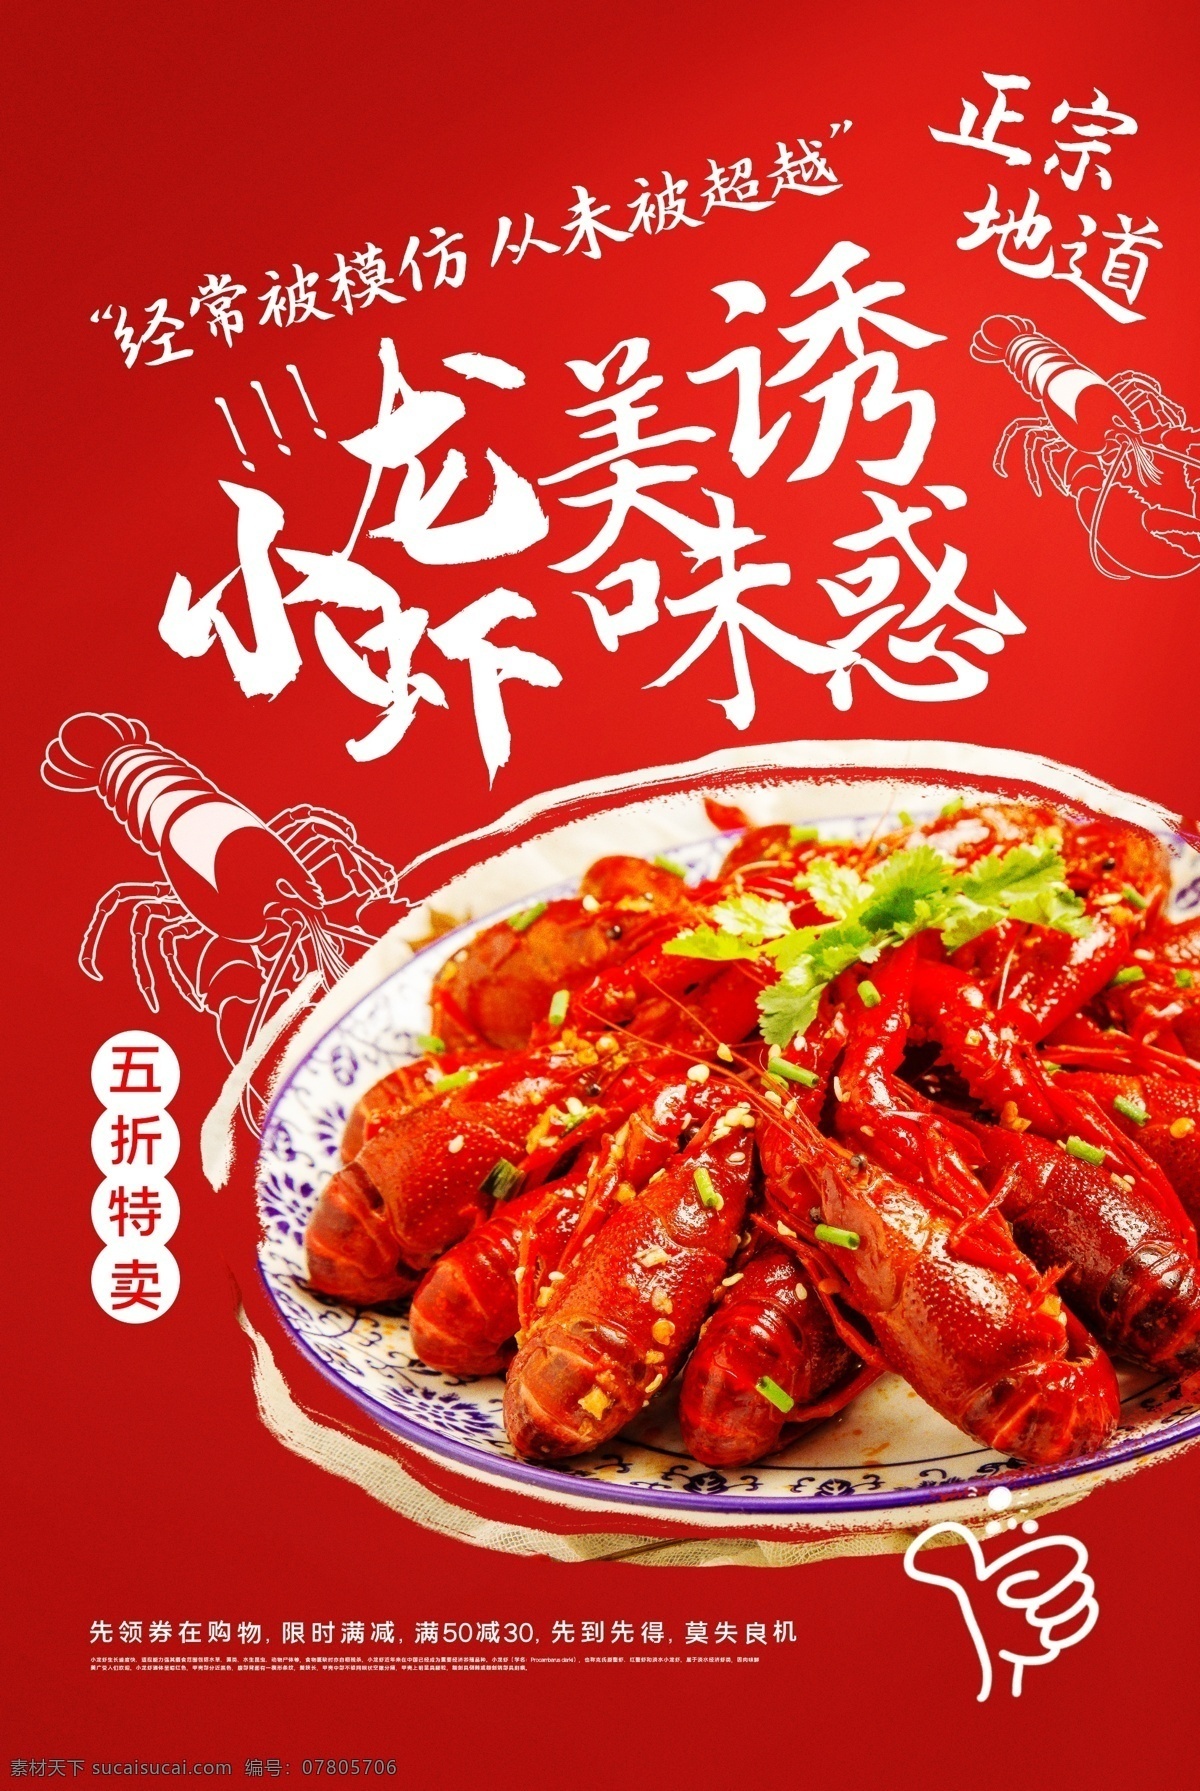 小 龙虾 美食 宣传海报 素材图片 小龙虾 宣传 海报 餐饮美食 类